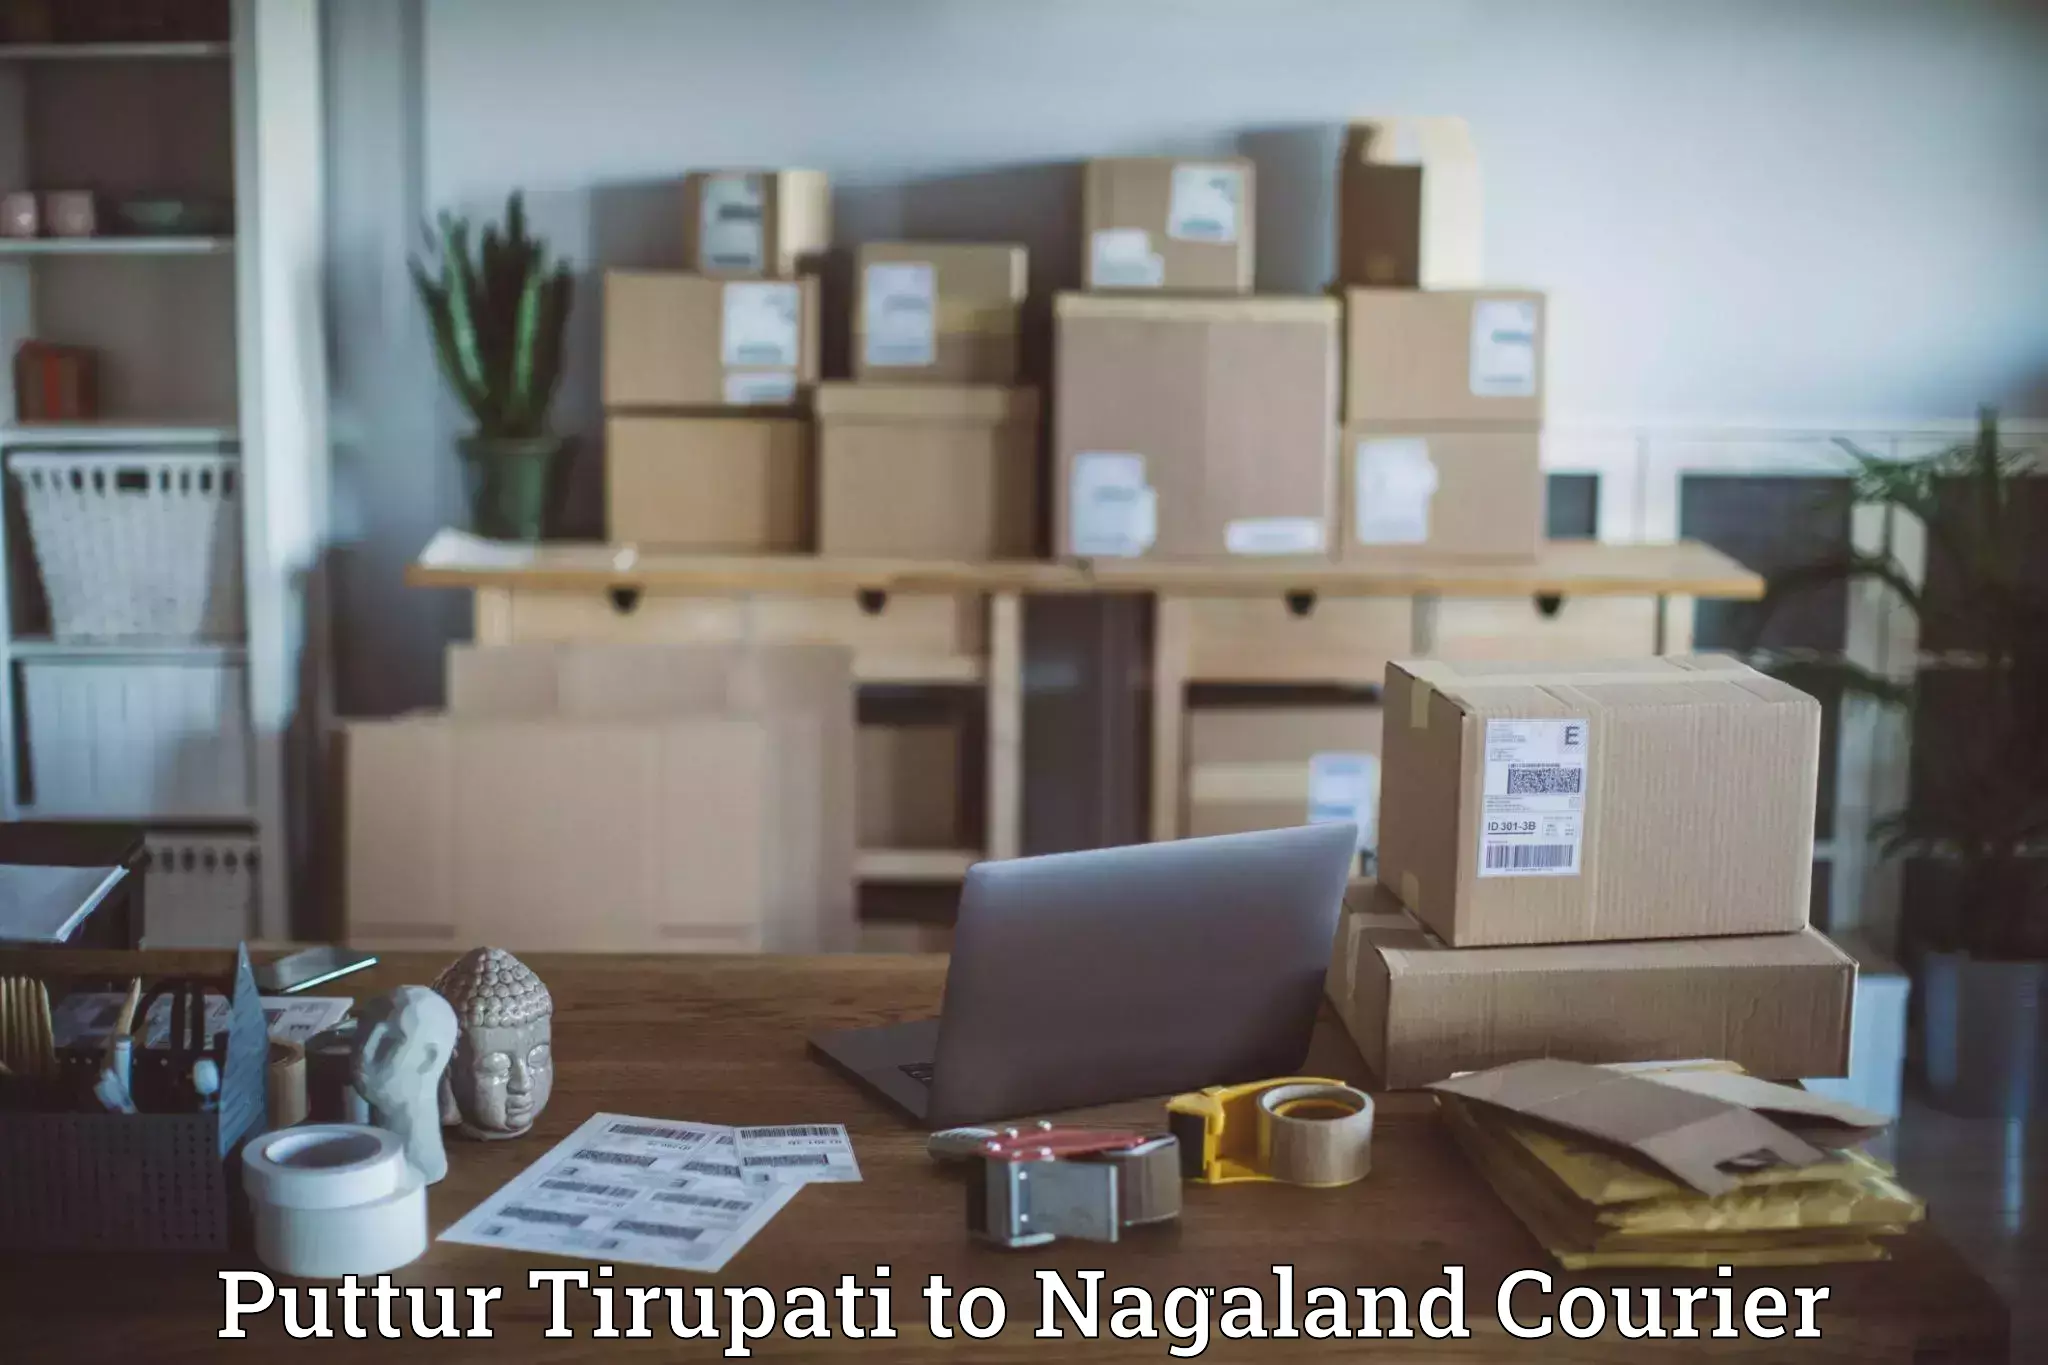 Express logistics providers Puttur Tirupati to Kiphire